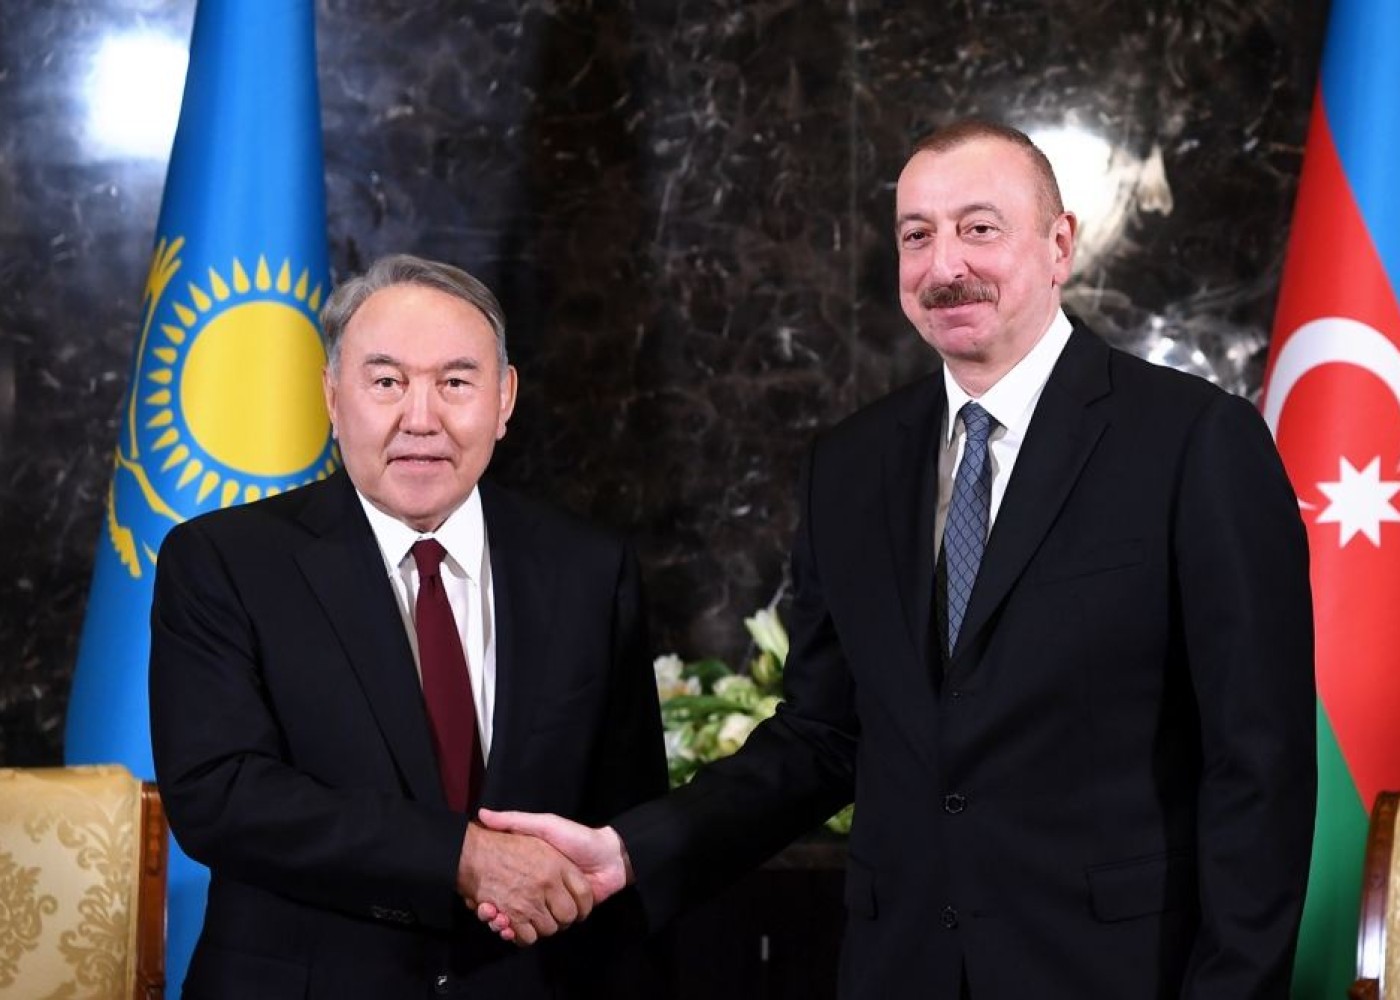 Azərbaycan xalqına sülh və rifah diləyirəm -Nazarbayev